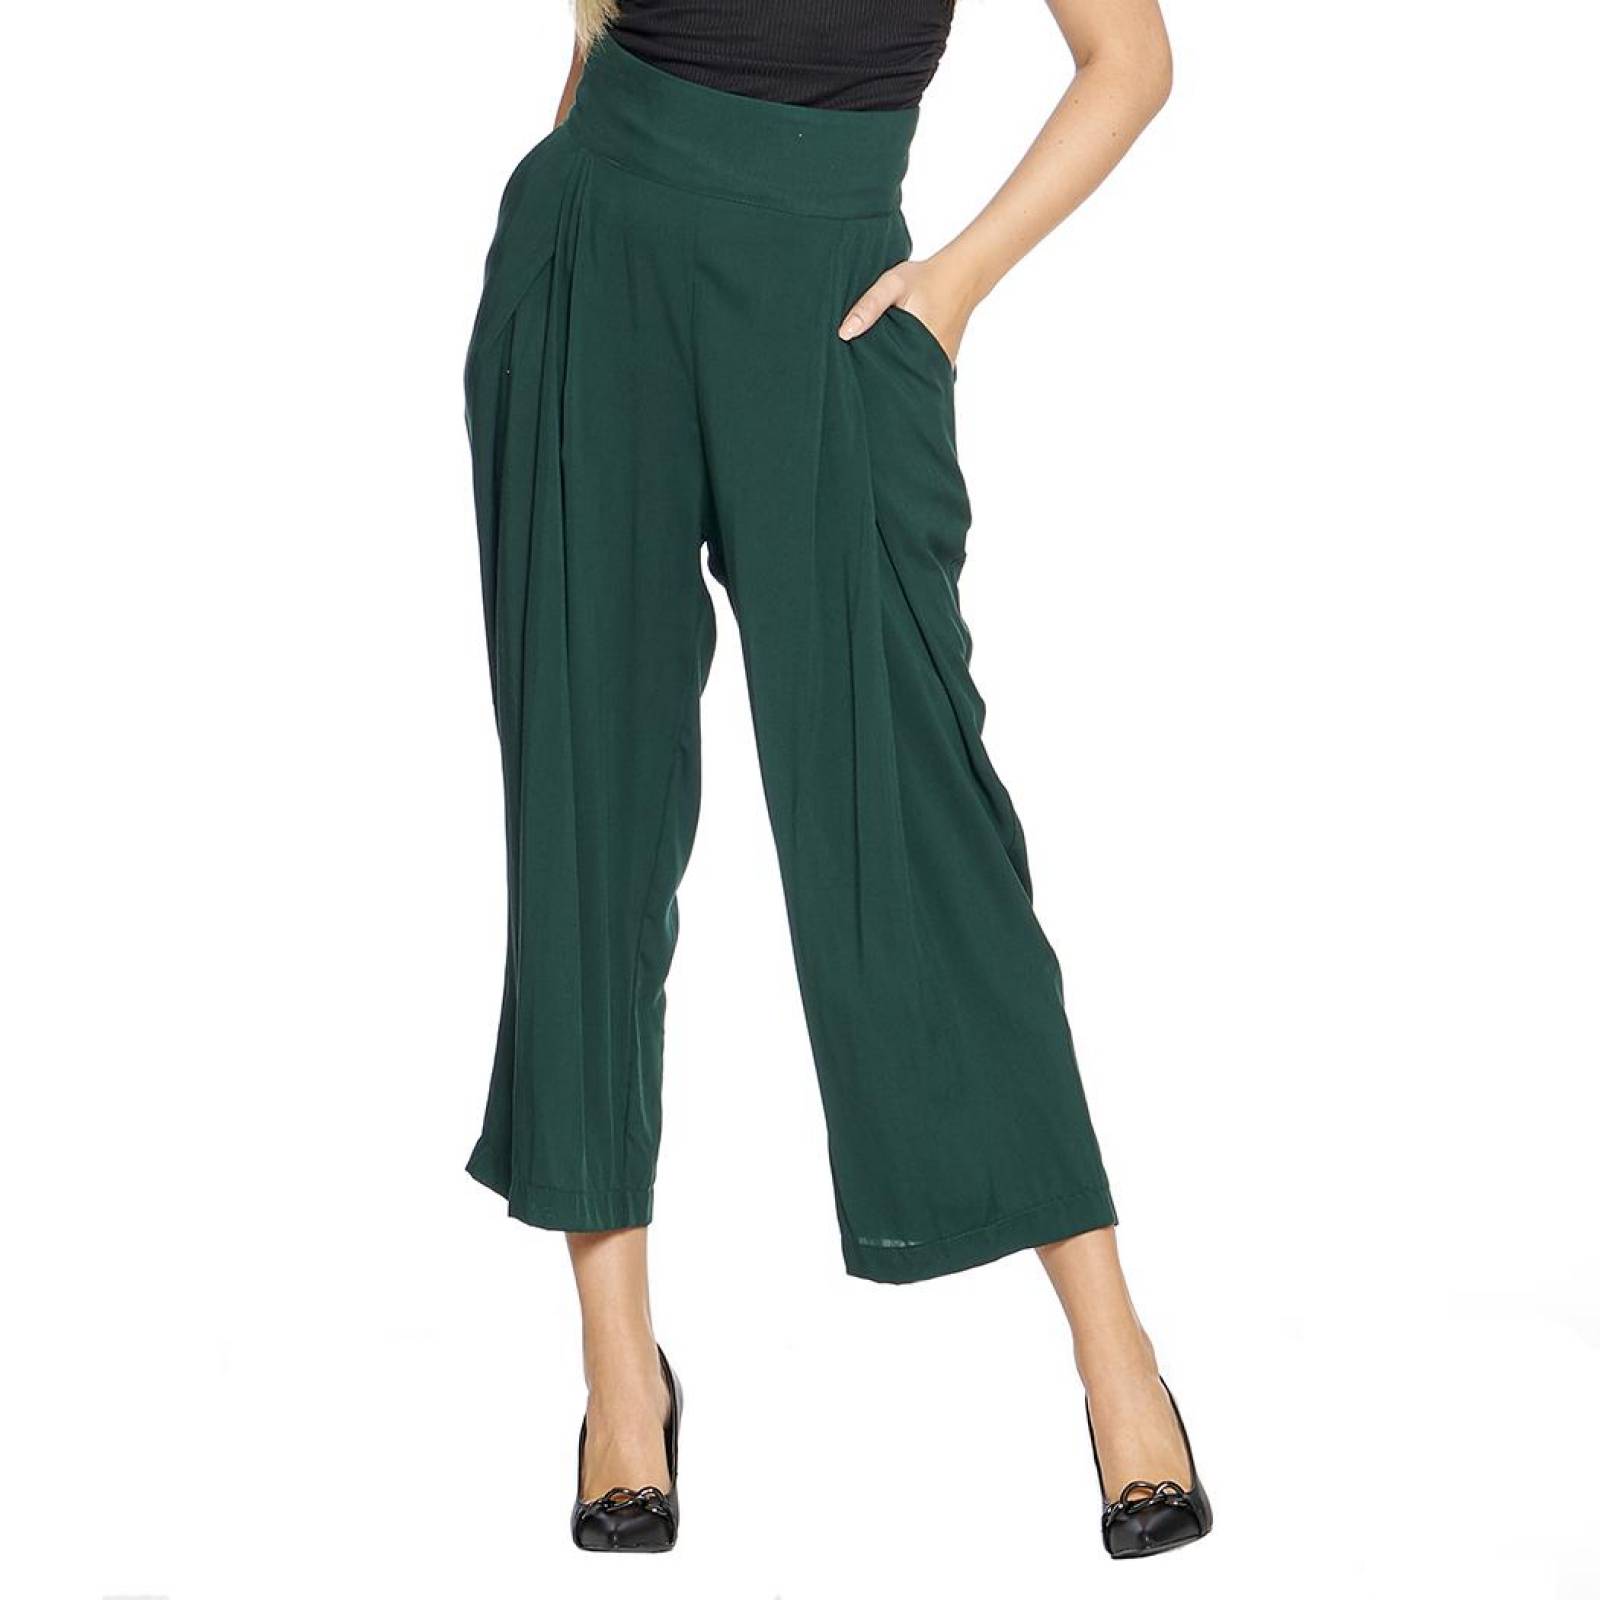 Comprar Pantalon de Dama Tela Amplio y color Moderno online